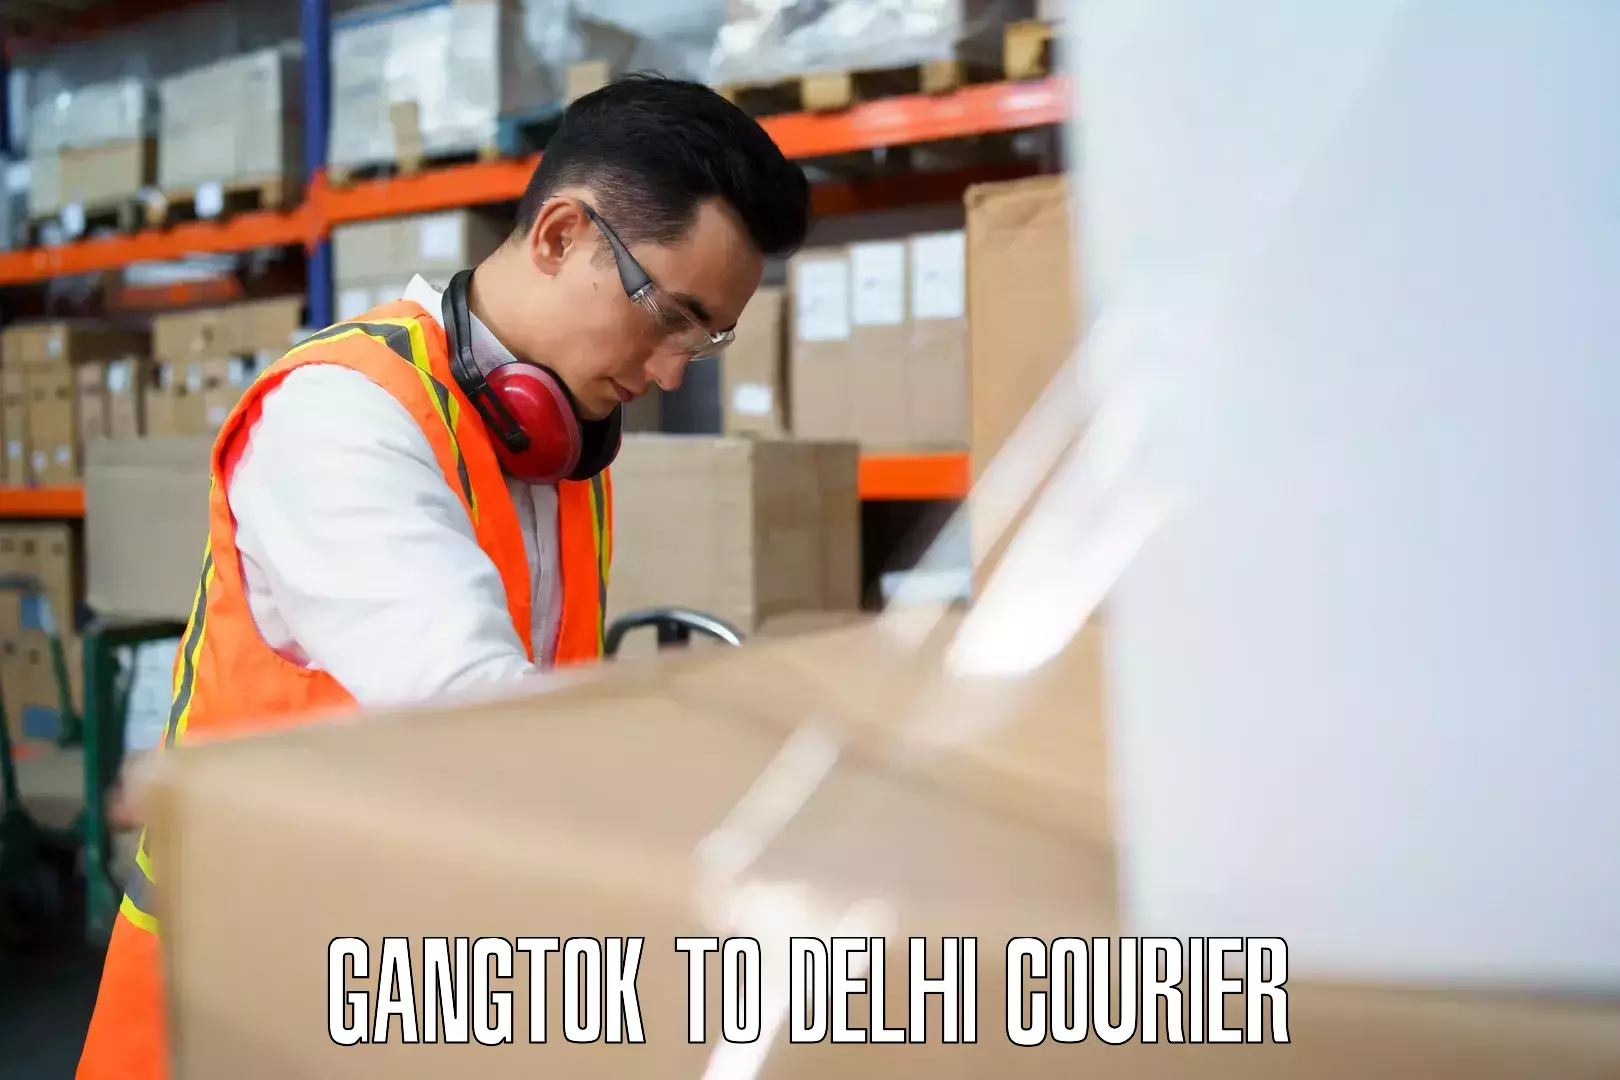 Luggage shipment specialists Gangtok to Sarojini Nagar